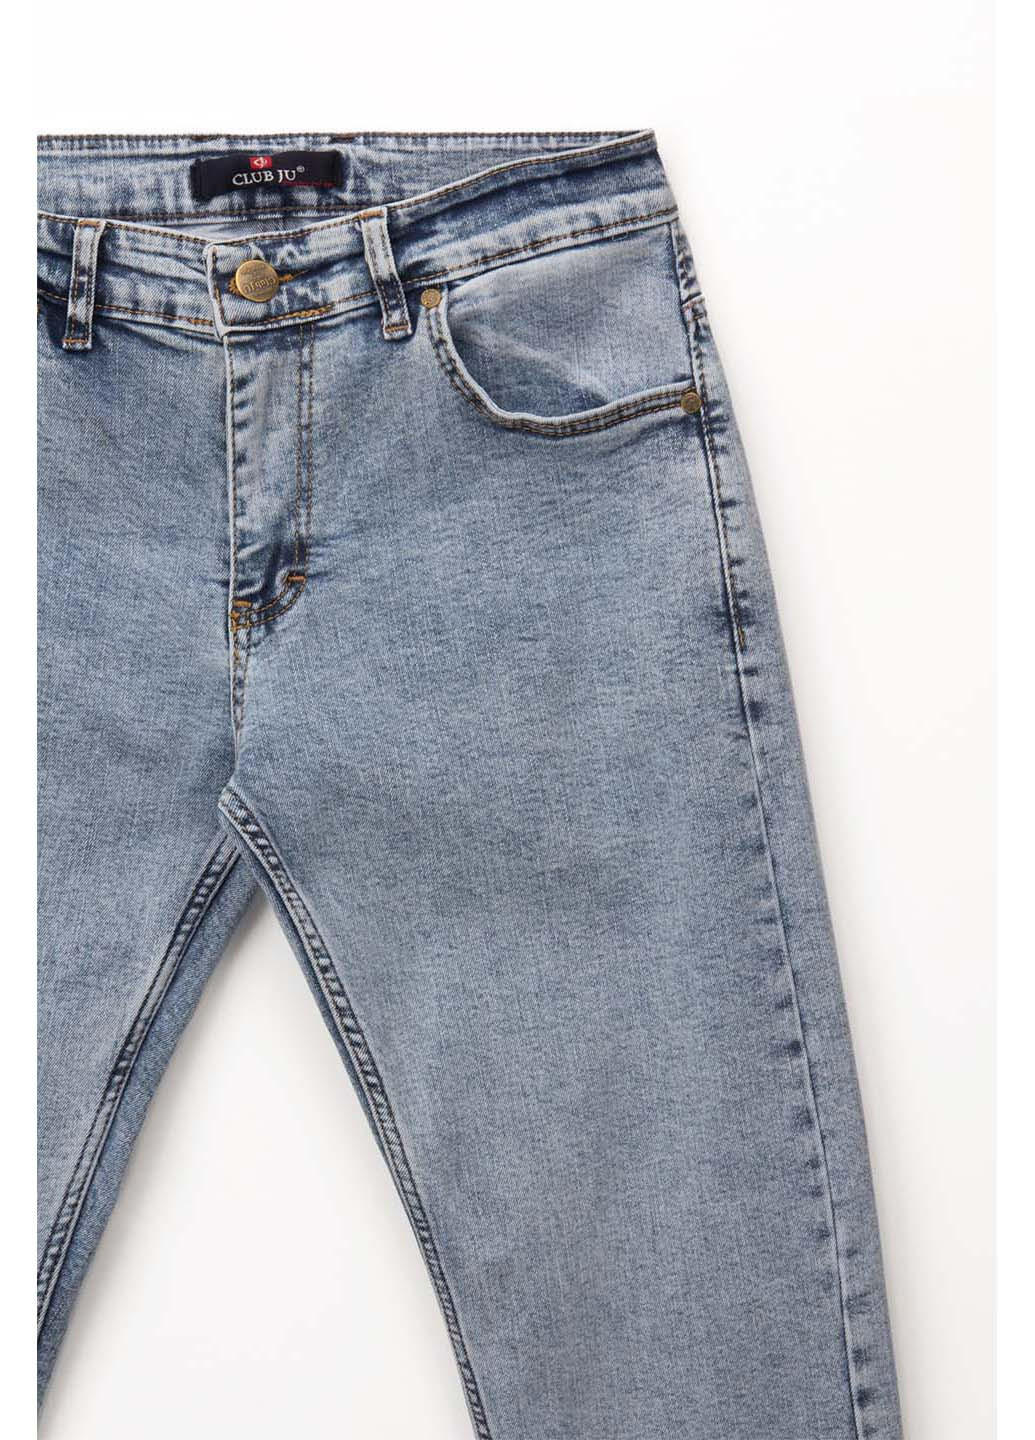 Голубые демисезонные джинсы slim fit CLUB JU